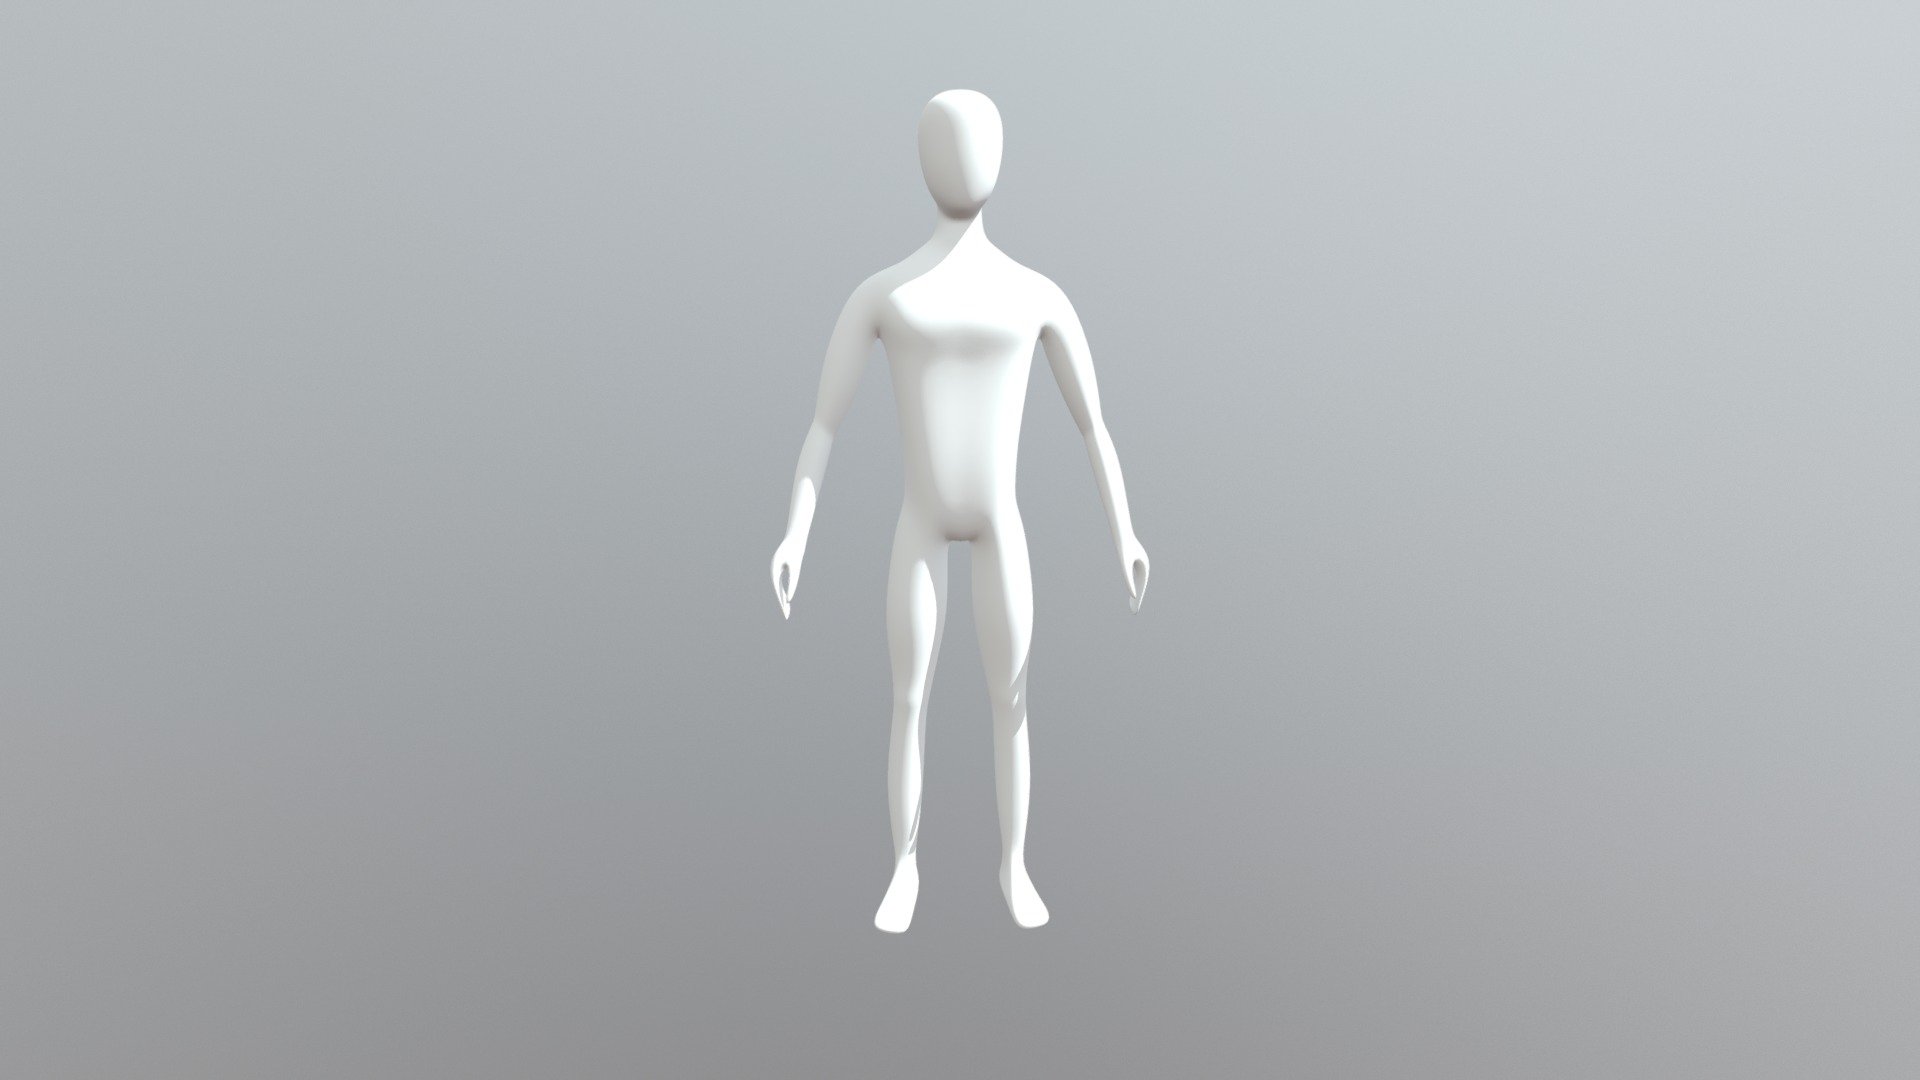 3d human model blender download